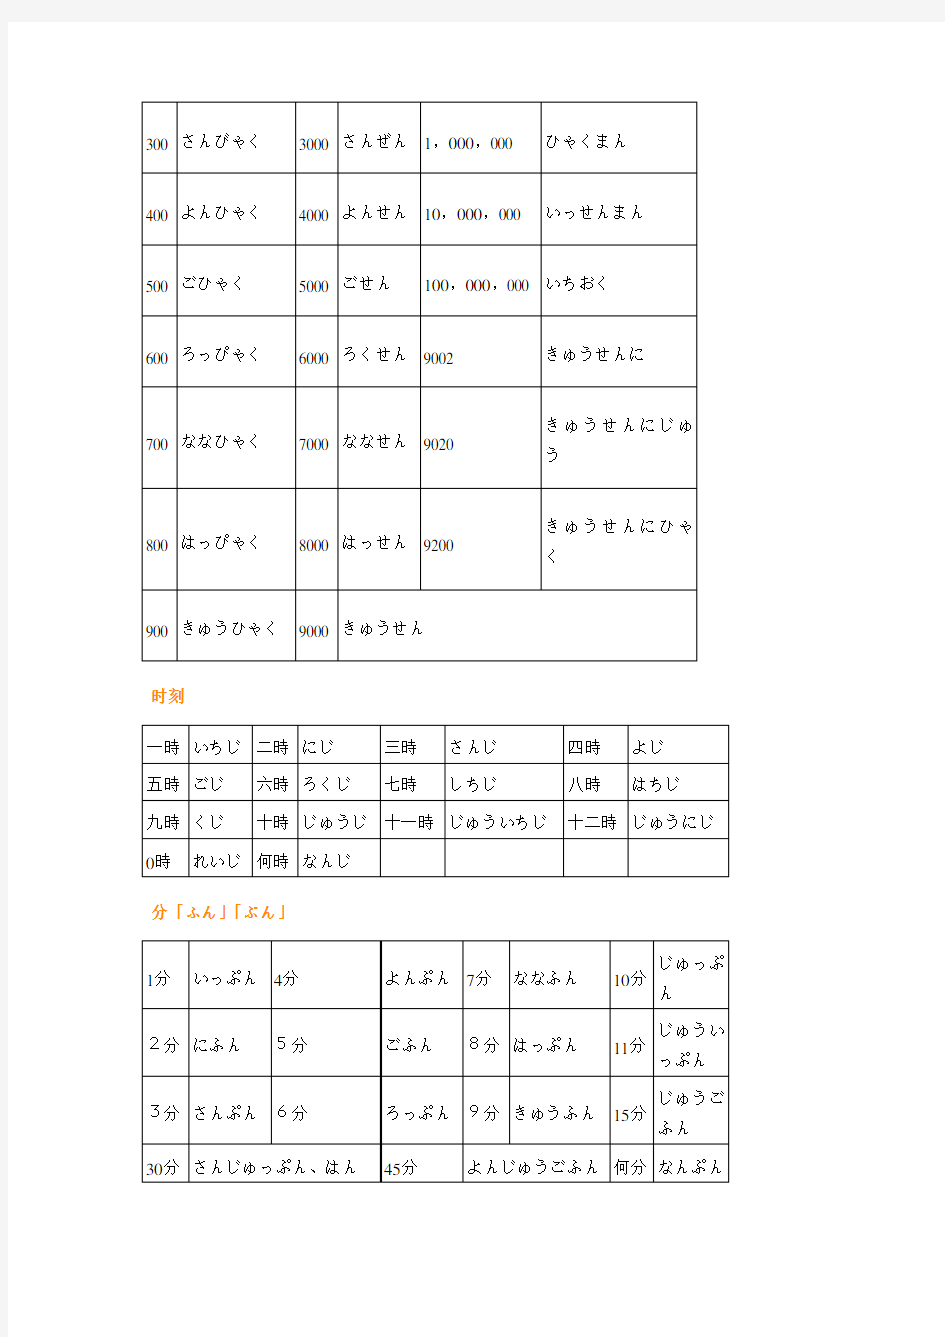 日语(数字、时间及星期、日期、月份的表示)